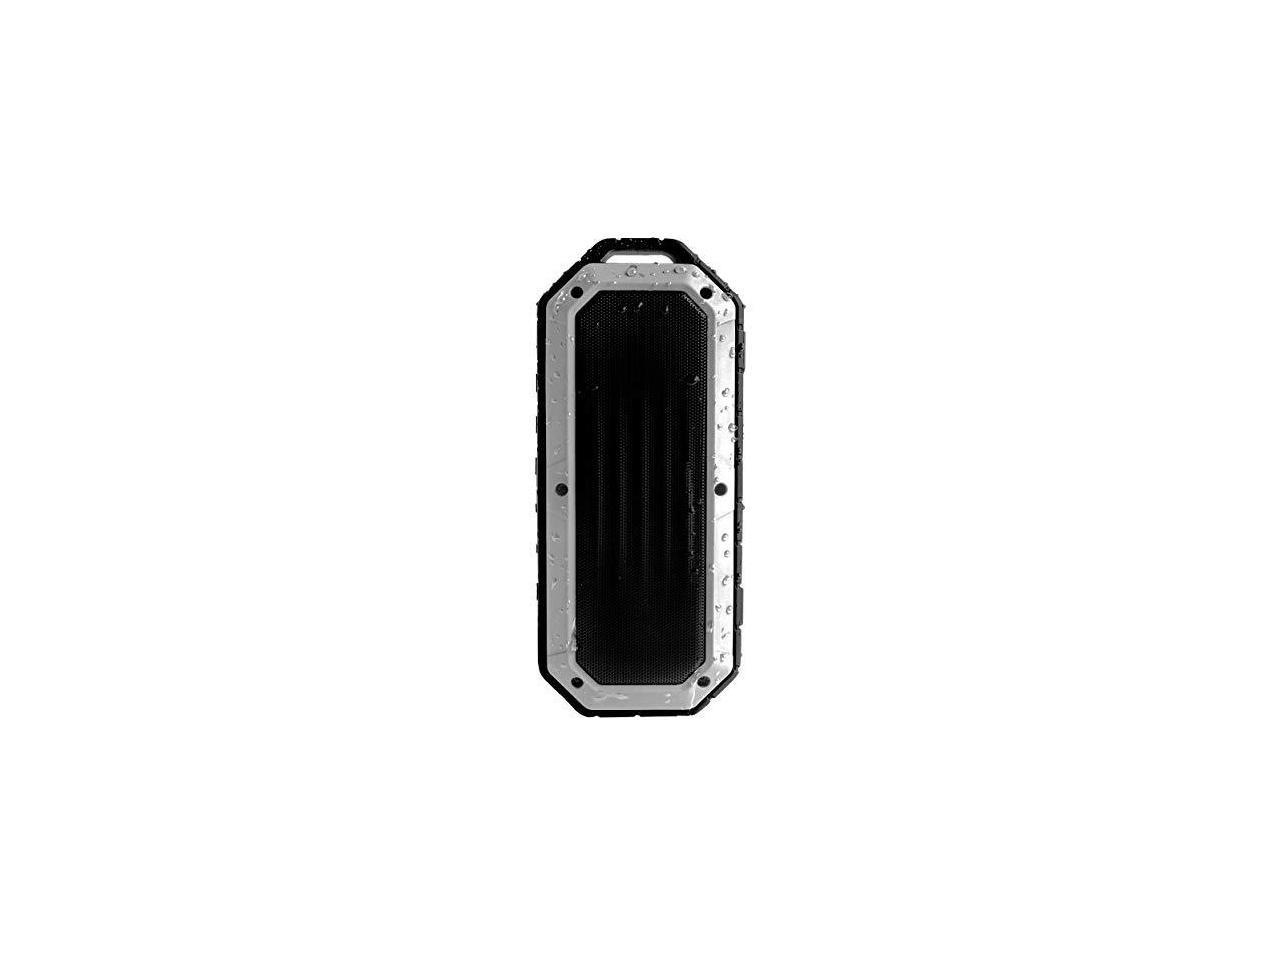 iJoy Beach Bomb IP66 Waterproof Shockproof Portable Bluetooth Speaker